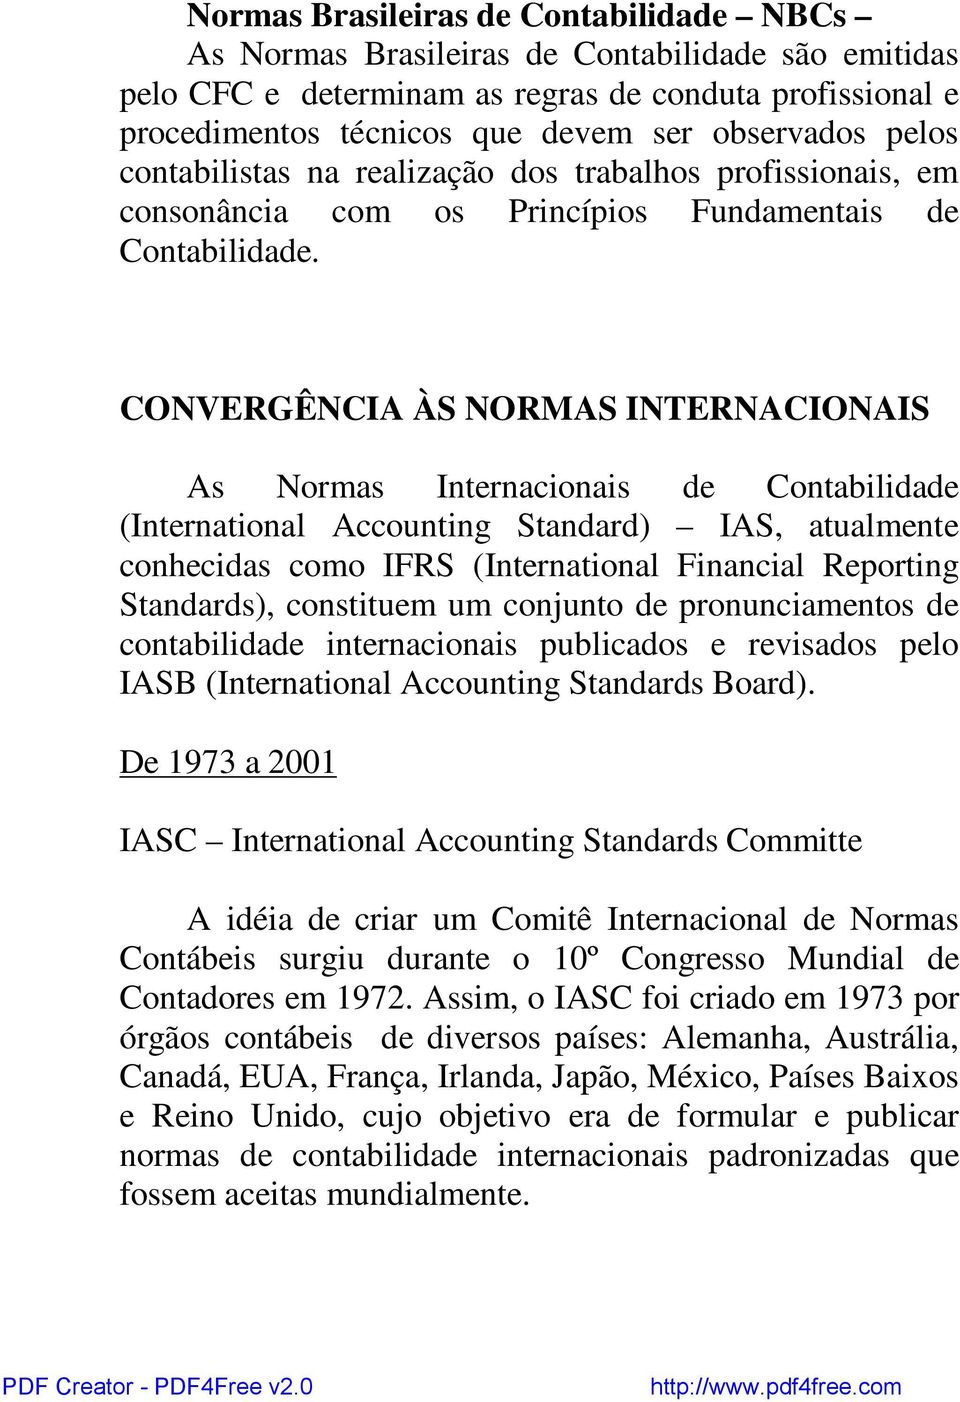 CONVERGÊNCIA ÀS NORMAS INTERNACIONAIS As Normas Internacionais de Contabilidade (International Accounting Standard) IAS, atualmente conhecidas como IFRS (International Financial Reporting Standards),